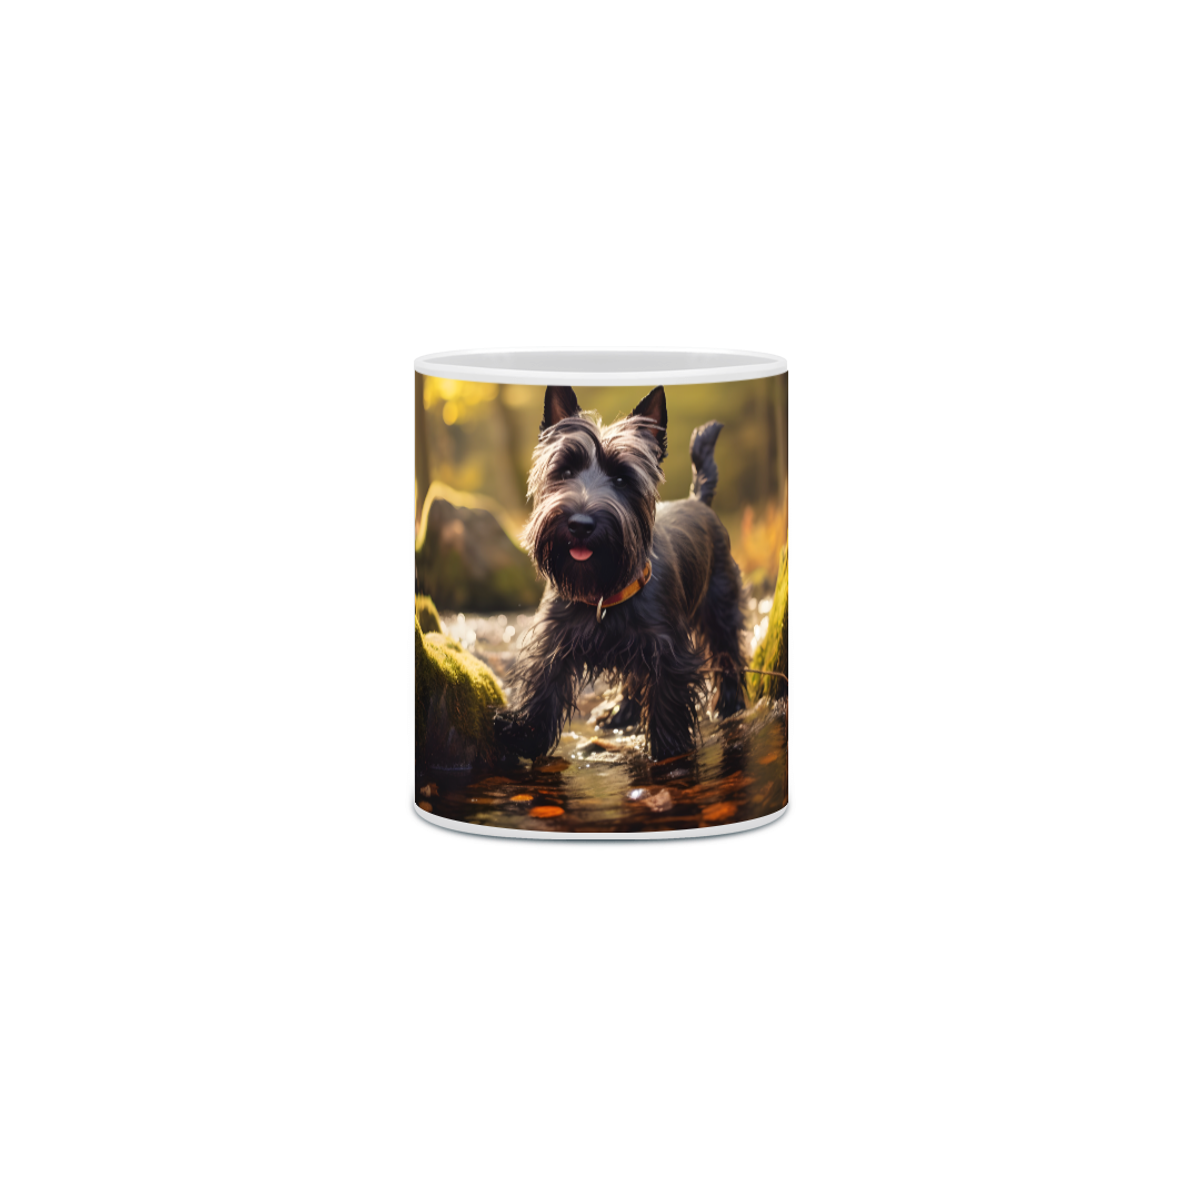 Nome do produto: Caneca Scottish Terrier com Arte Digital - #Autenticidade 0022